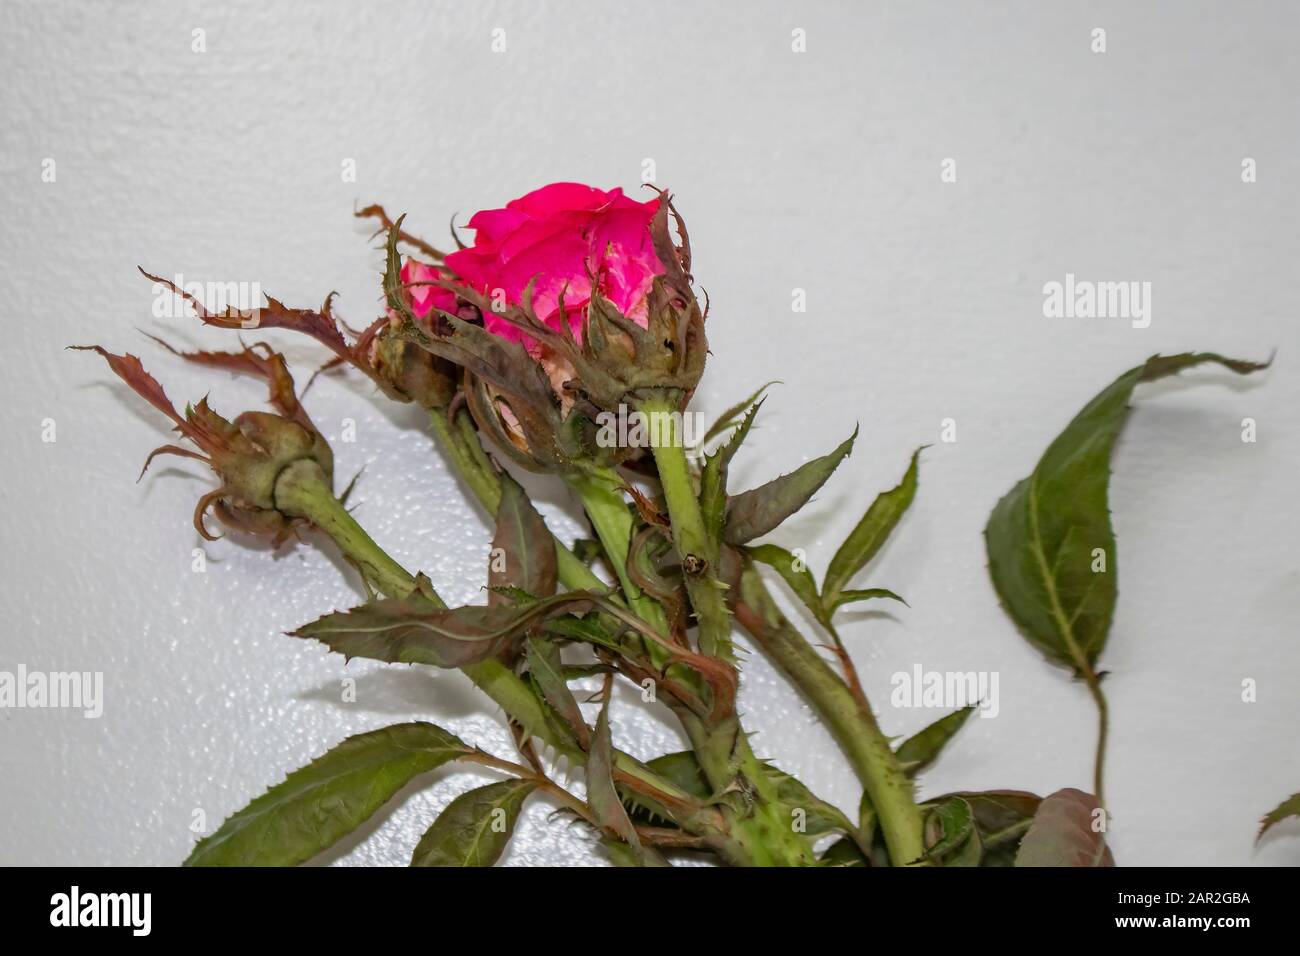 Una rosa de un arbusto infectado con un virus llamado roseta de rosa, propagada por los pequeños ácaros transportados por el viento Foto de stock